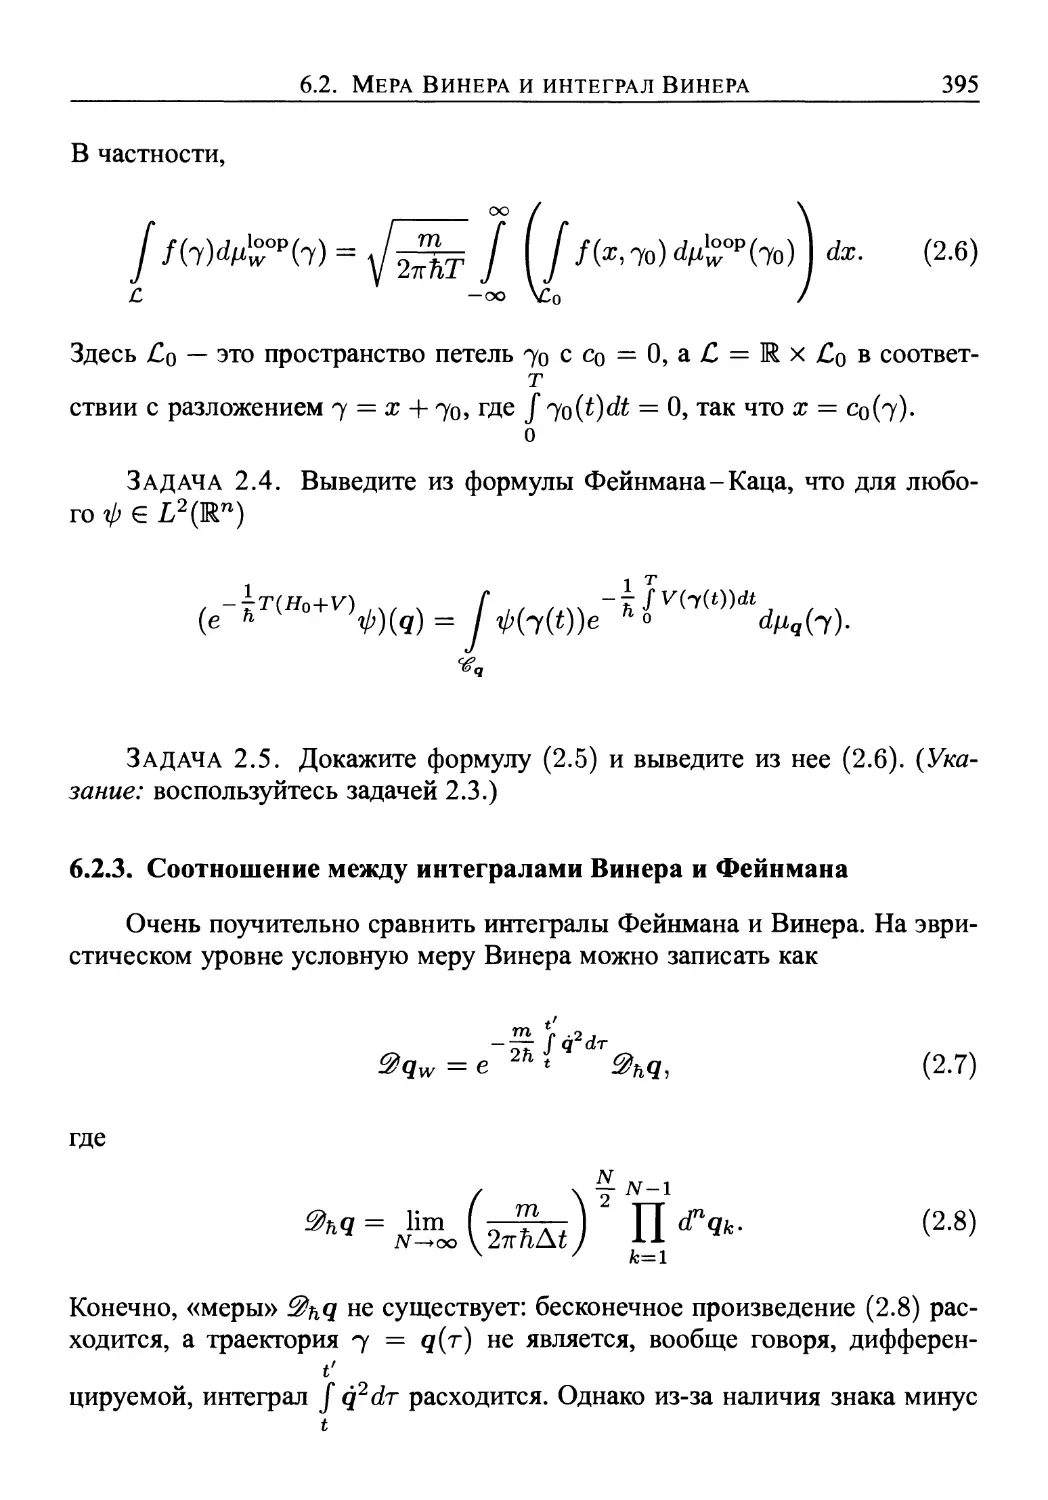 6.2.3. Соотношение между интегралами Винера и Фейнмана